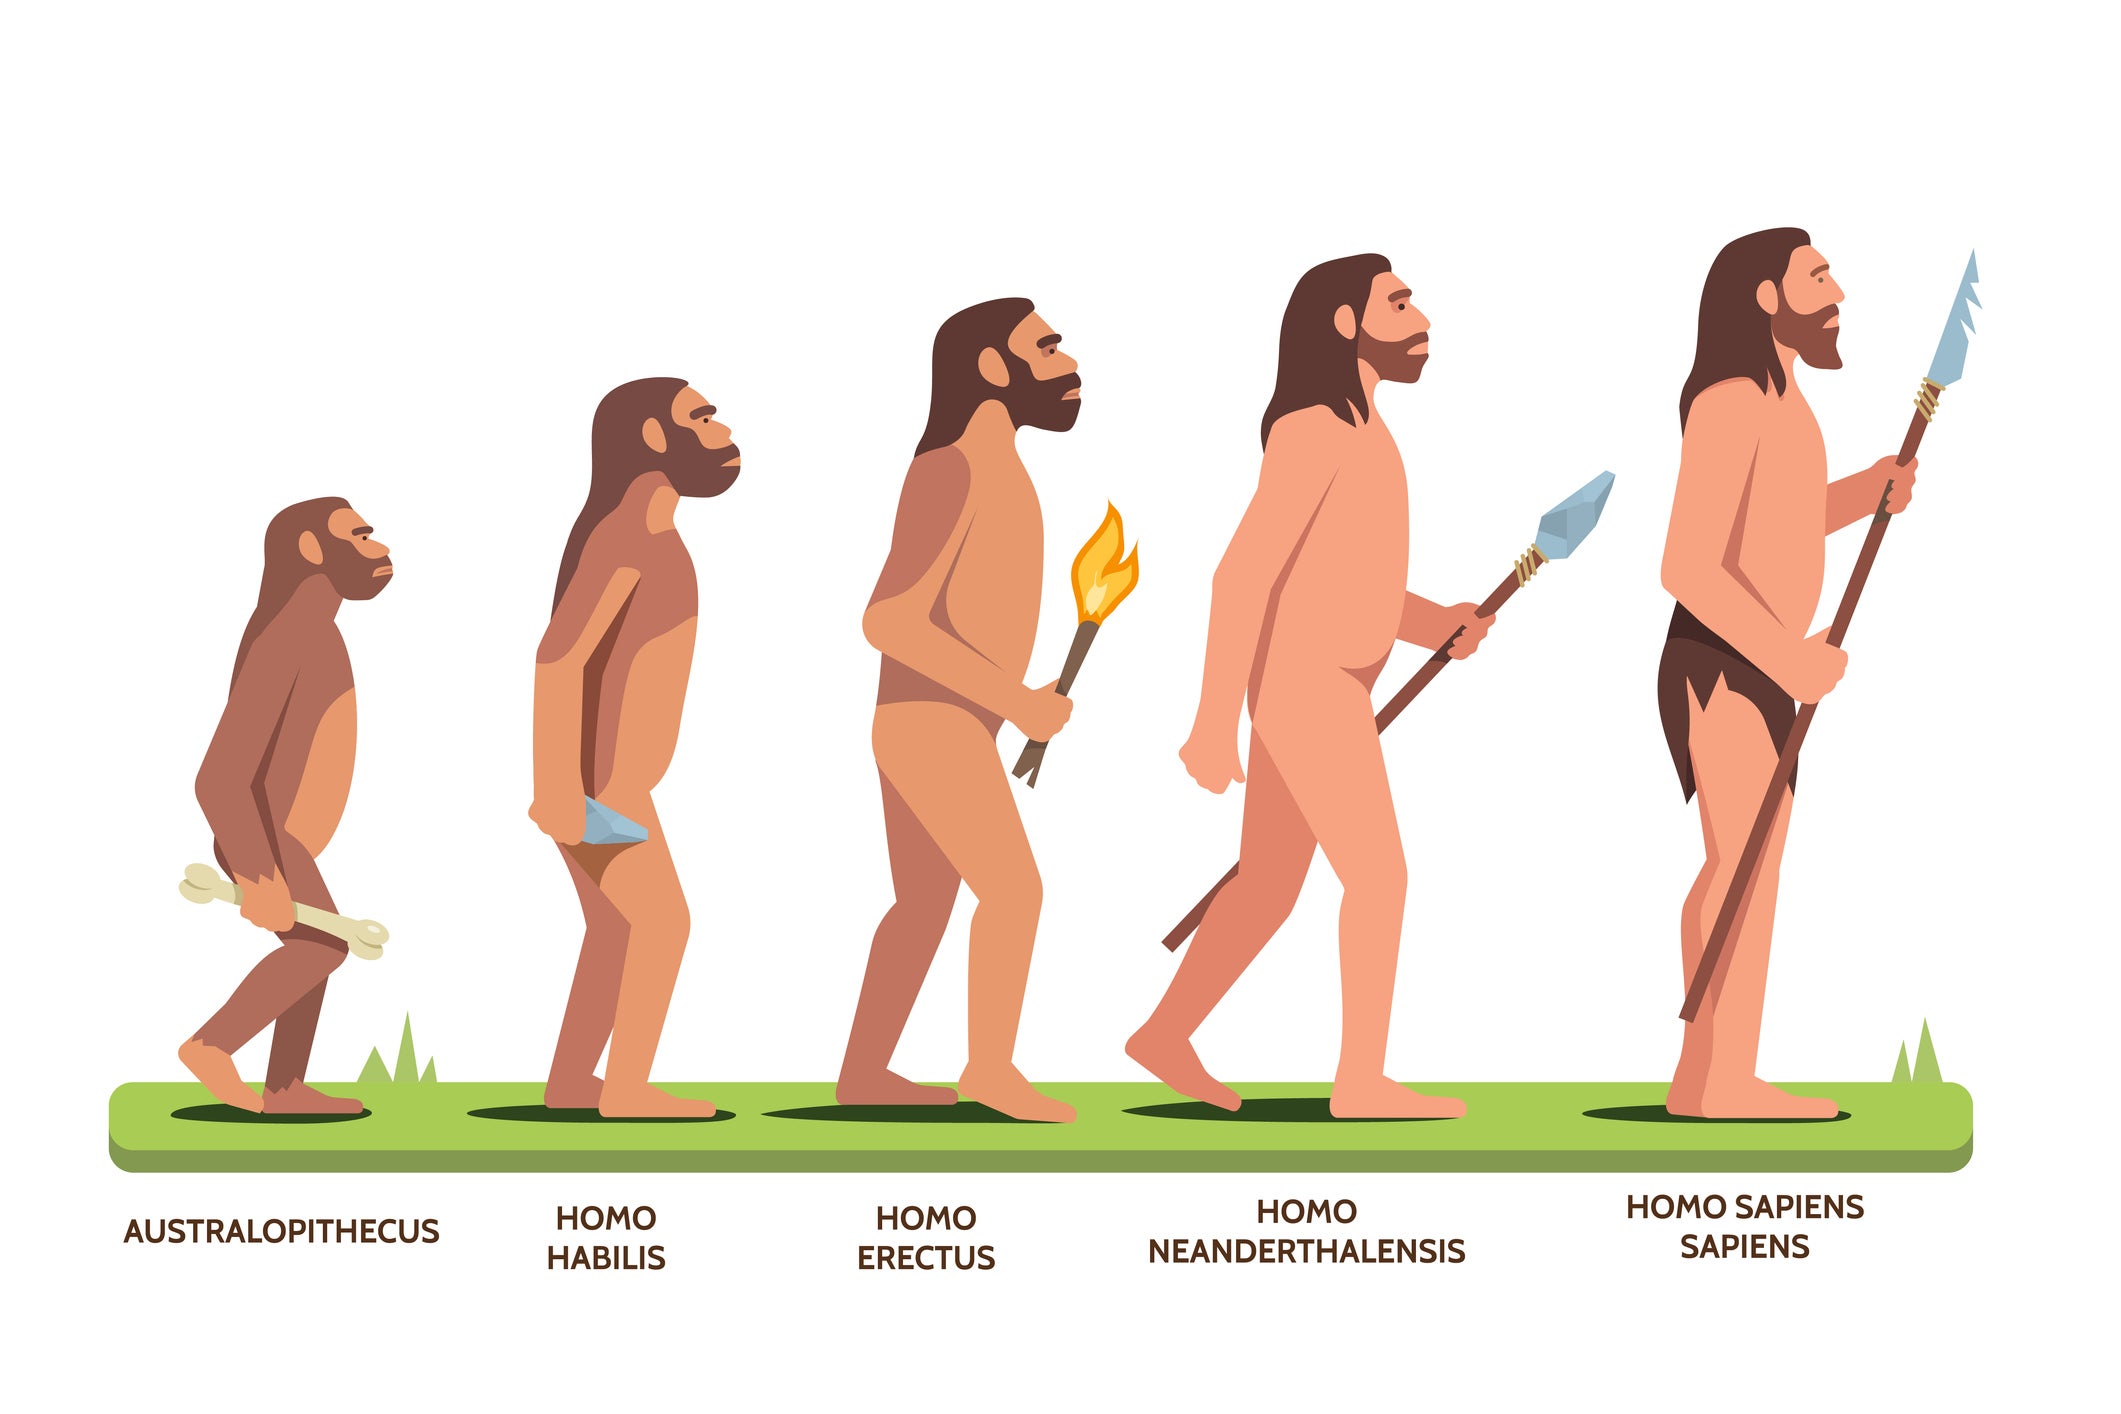 Evolution of Man series shows Australopithecus to Homo sapiens